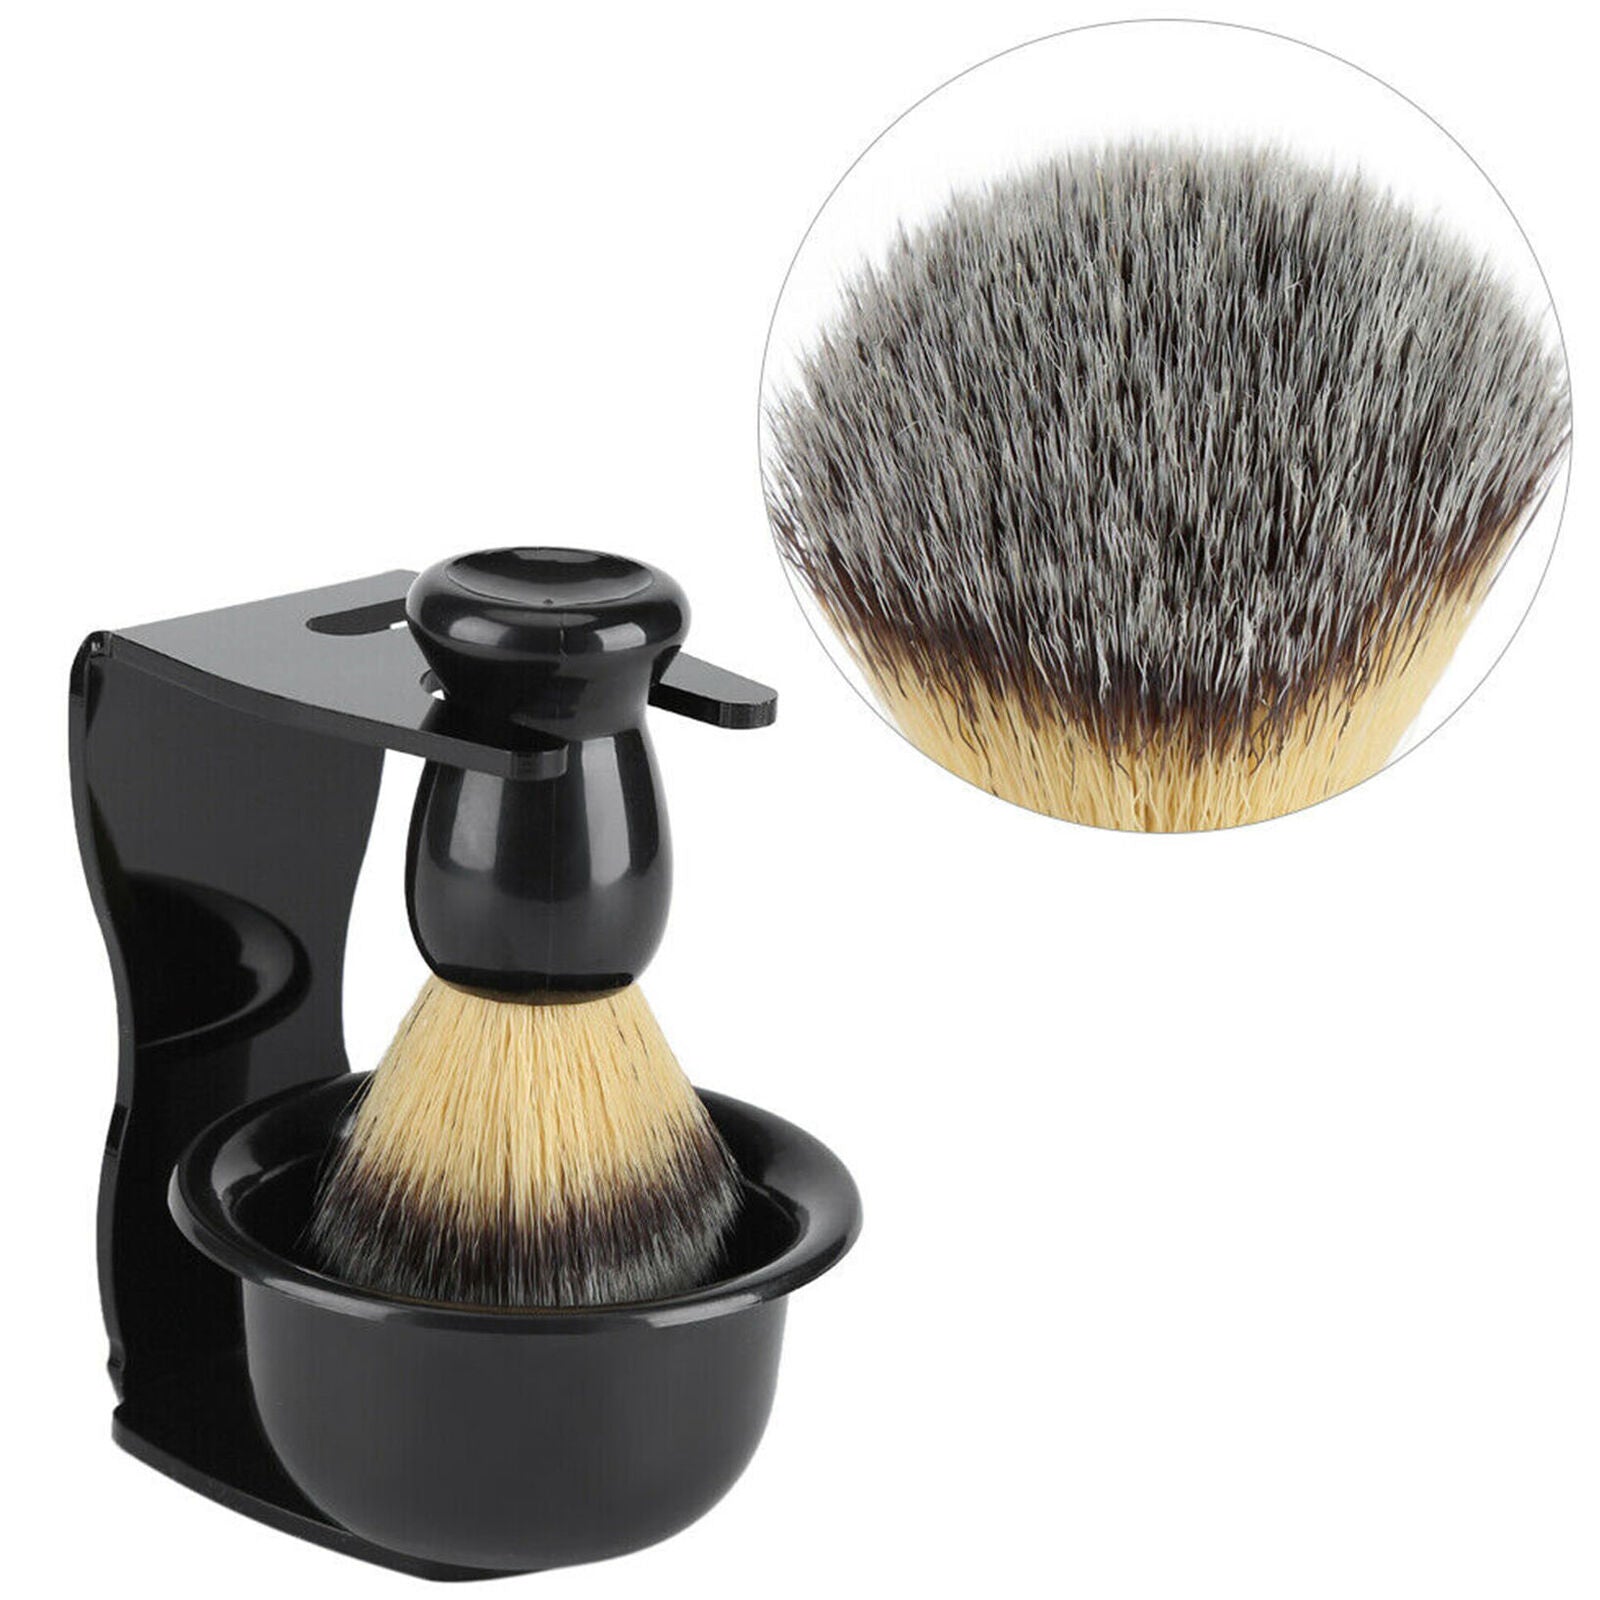 Shaving Set Badger Hair Brush Shaving And Razor Holder Stand +Bowl Cup